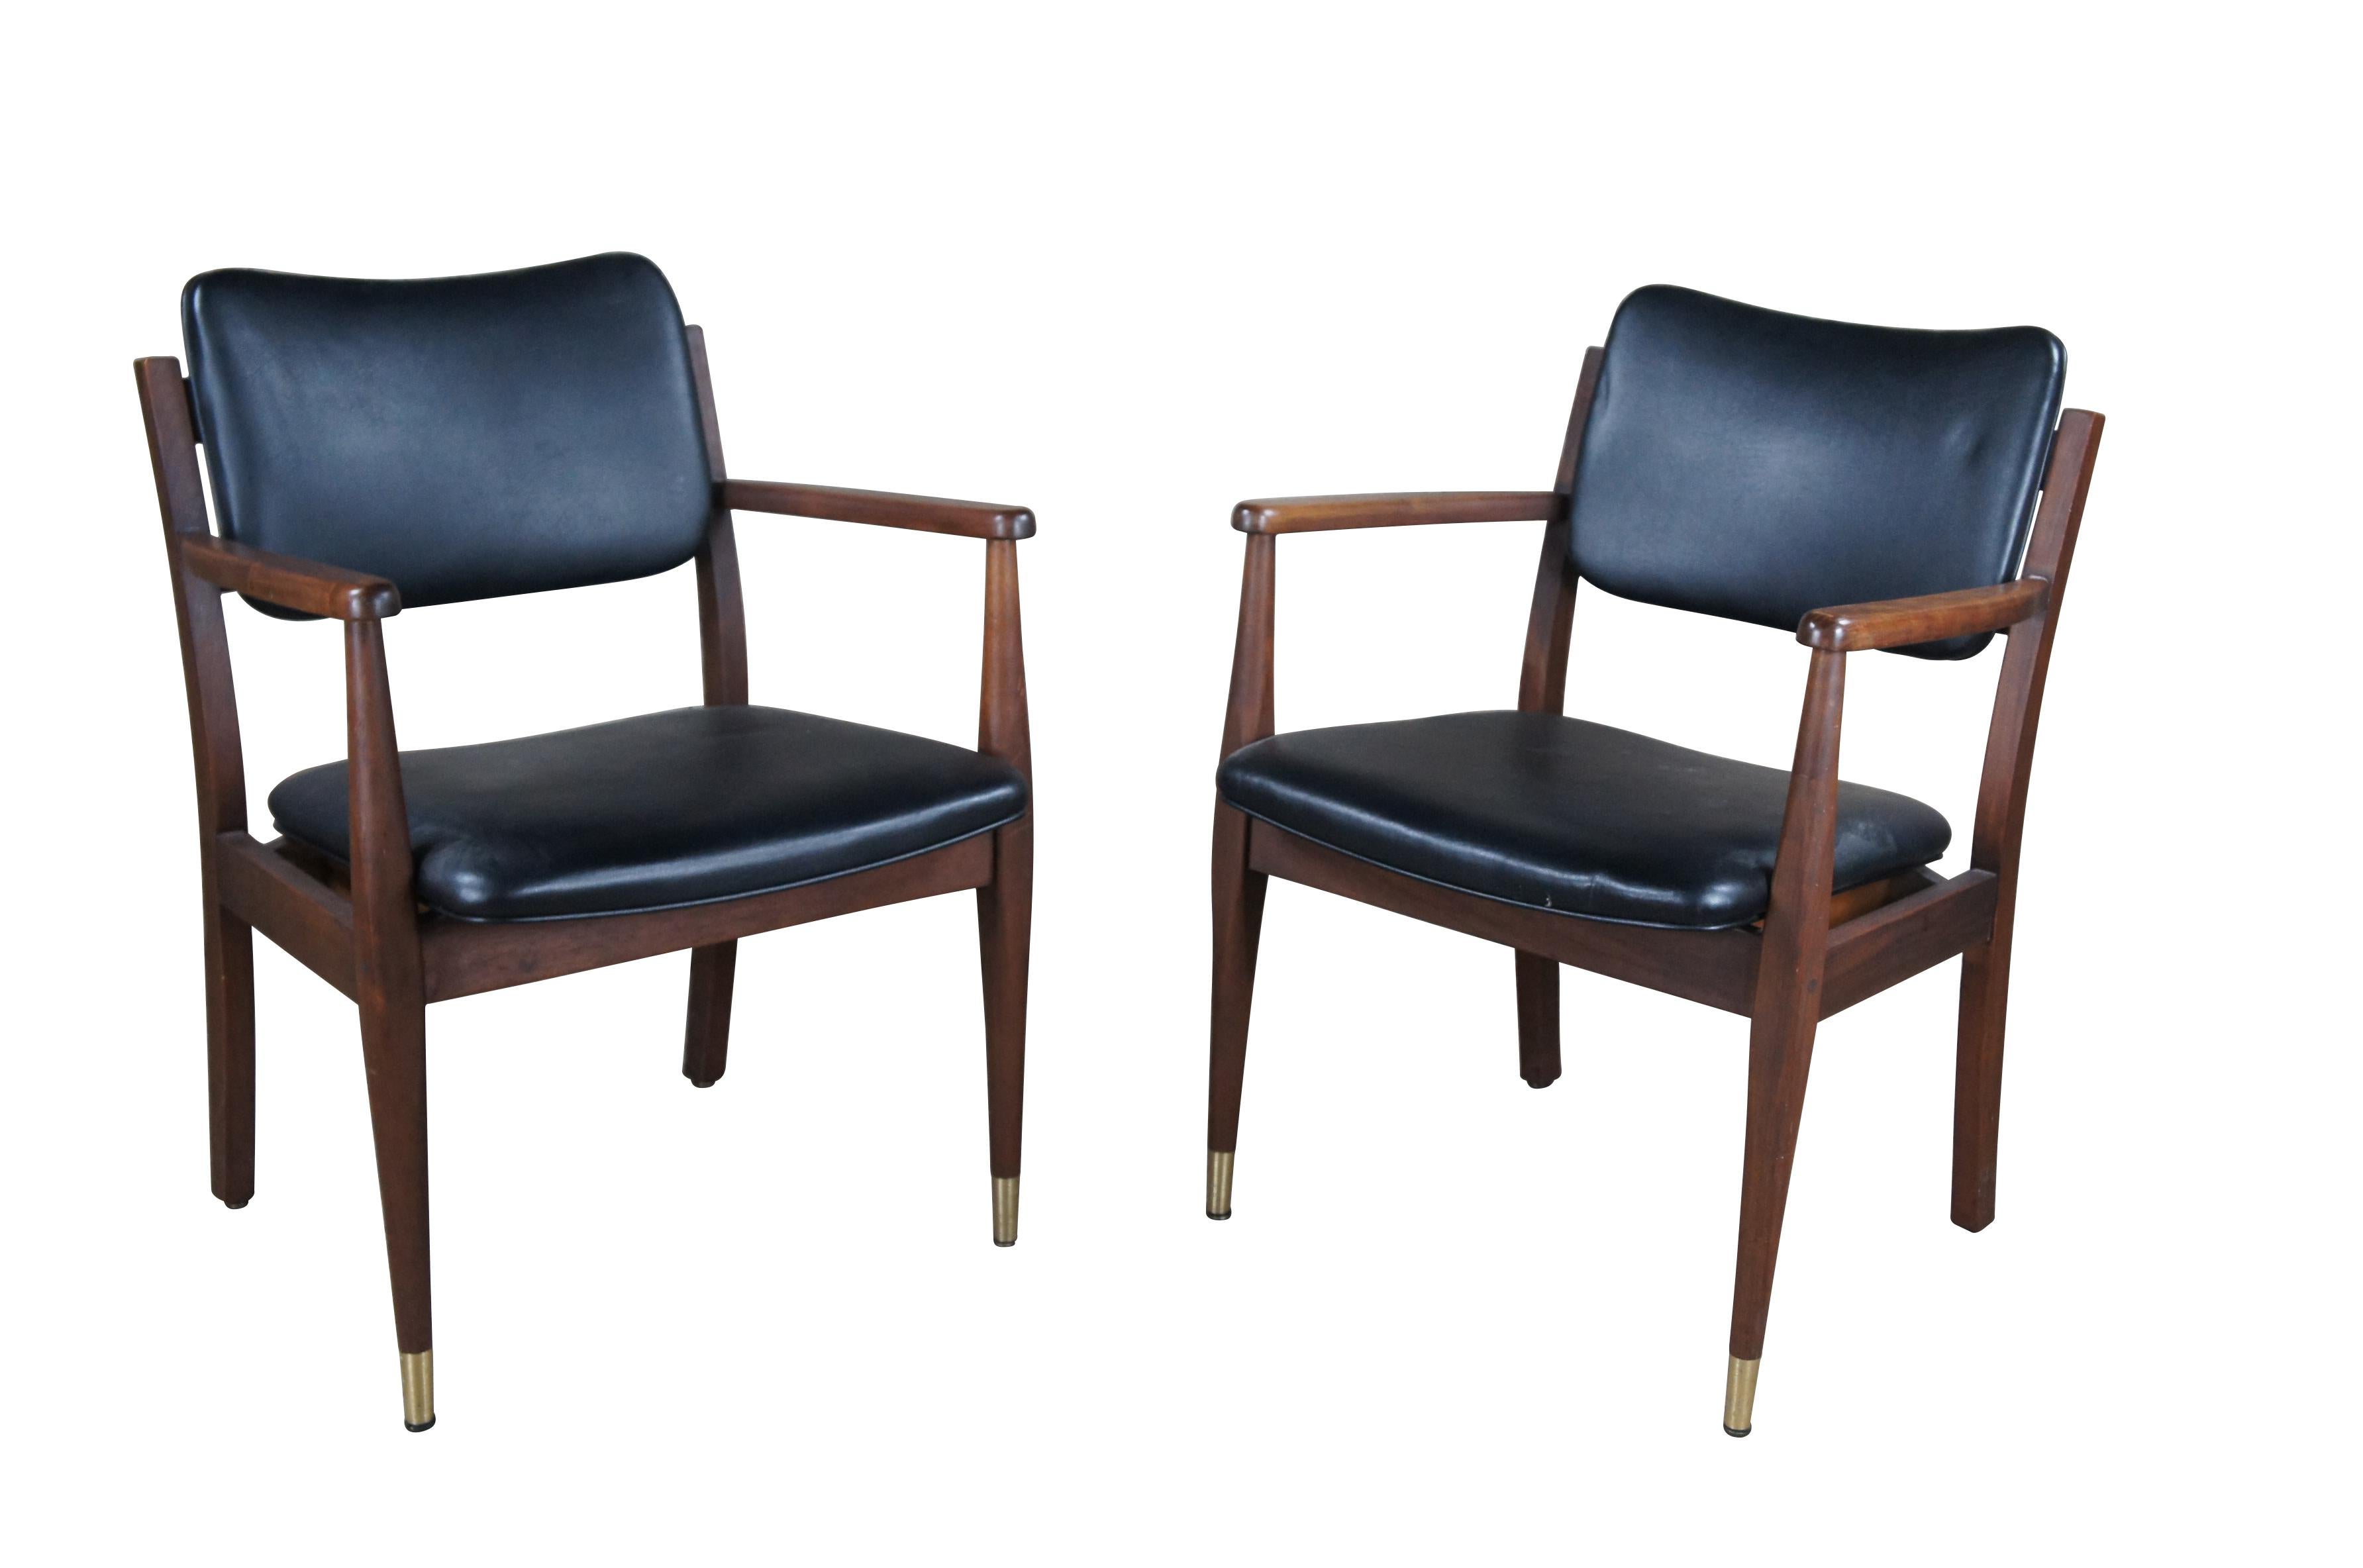 Ein Paar vintage Gregson Furniture Industries Sessel im dänischen Stil, circa 1983.  Hergestellt aus Nussbaumholz mit Sitz und Rückenlehne aus schwarzem Leder.  Mit Nagelköpfen auf der Rückseite.  

Gregson Furniture Industries, Liberty North